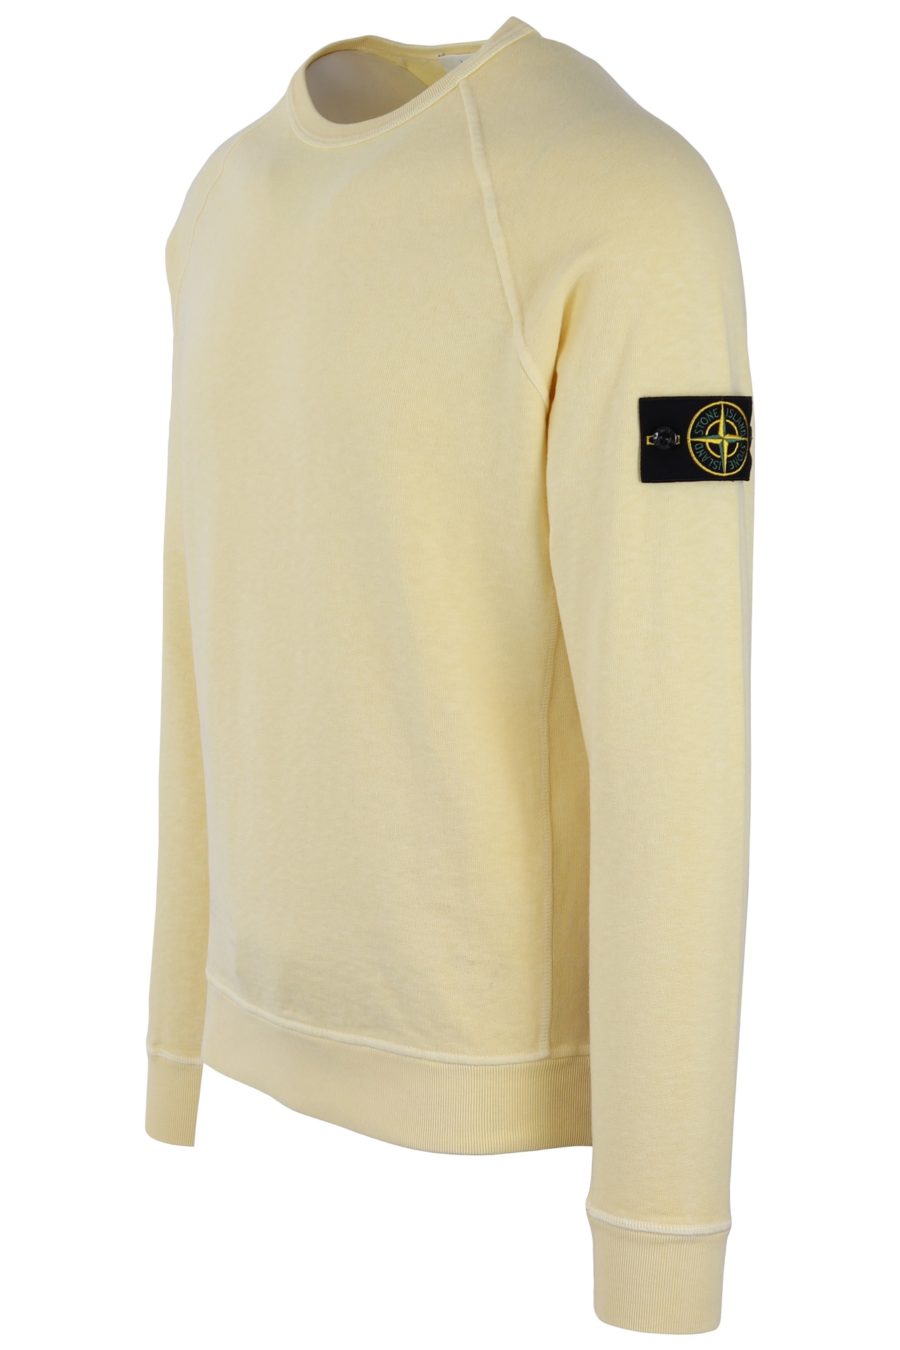 Stone Island gelbes Sweatshirt mit Patch - 0c60da22826f75e16df032ed5a9bb0fef322744c